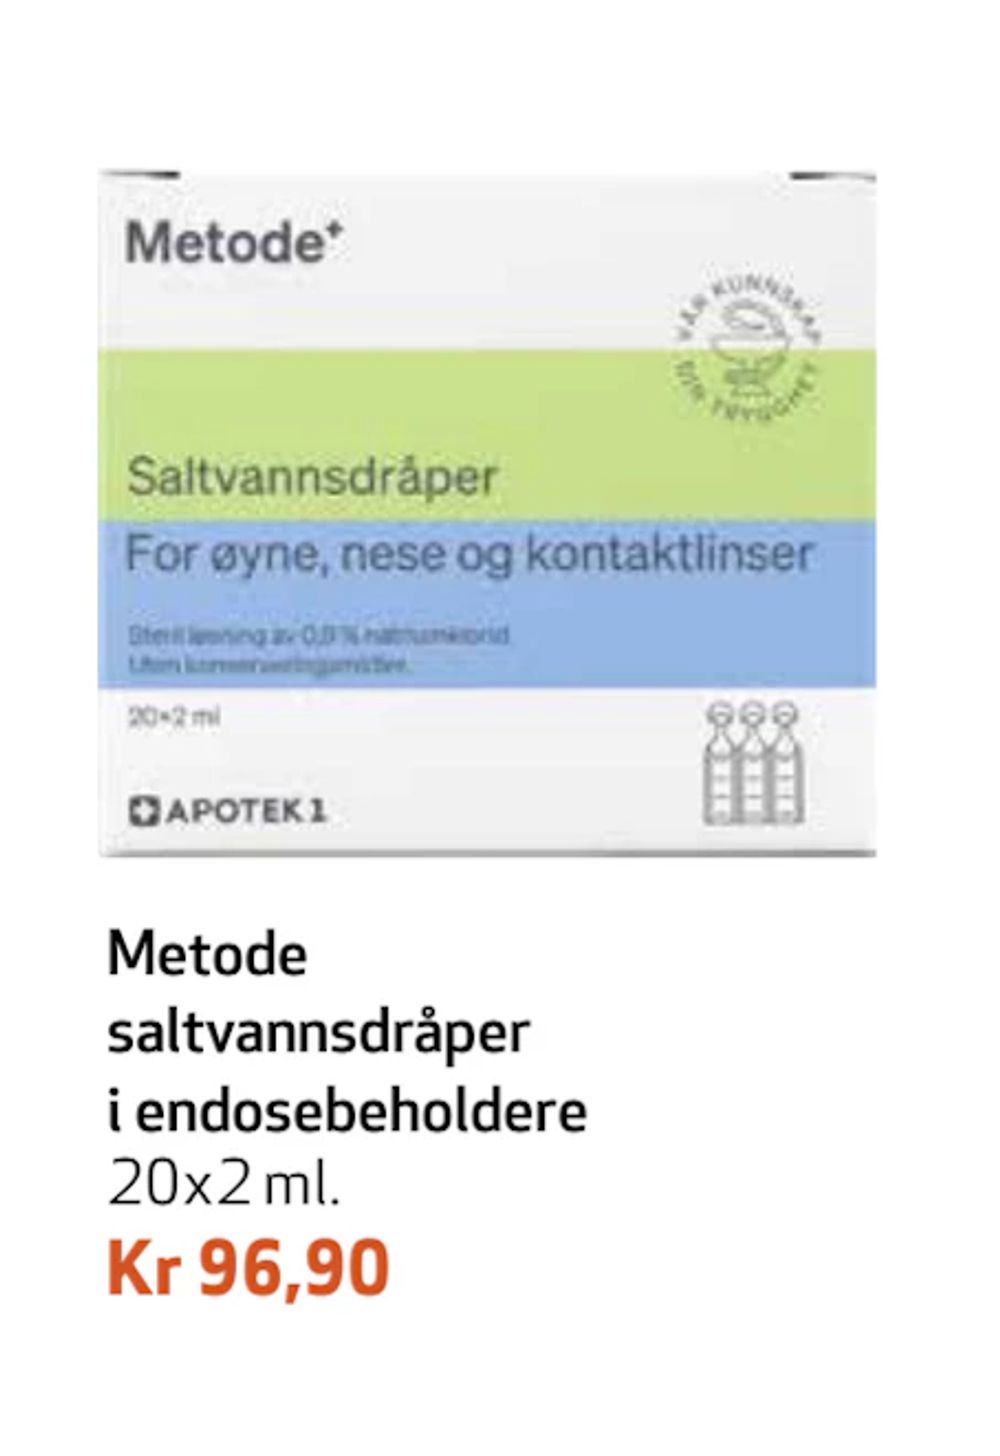 Tilbud på Metode saltvannsdråper i endosebeholdere fra Apotek 1 til 96,90 kr